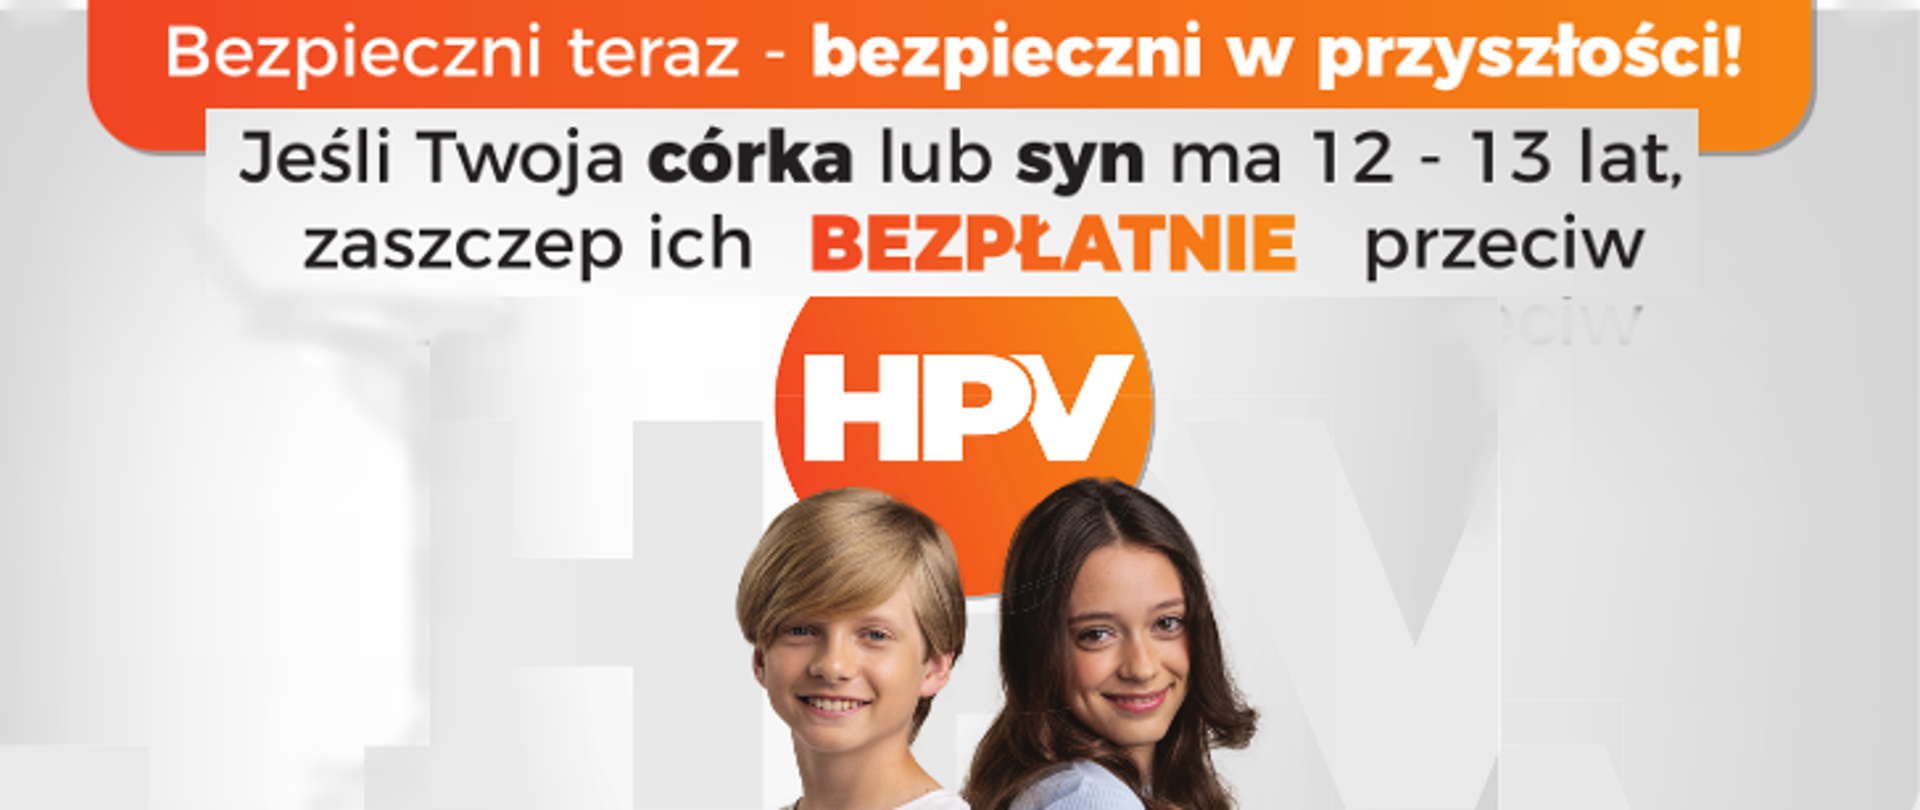 Szczepienia na HPV